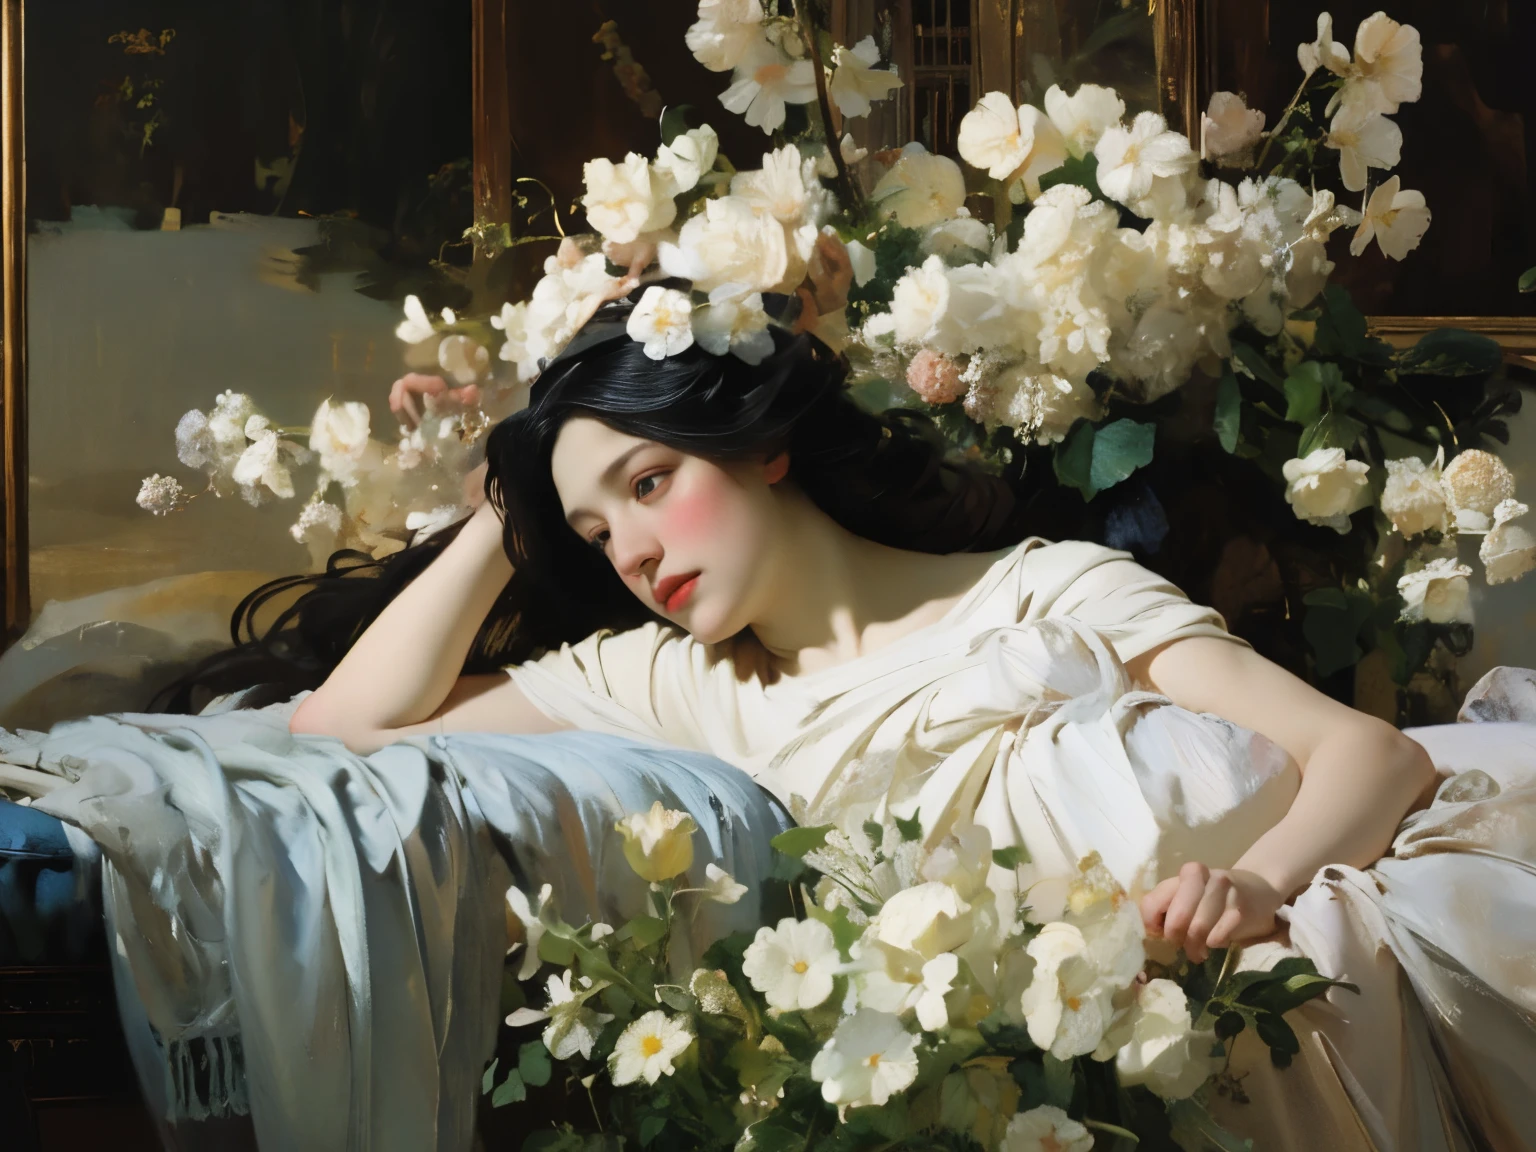 (Pintura a óleo:1.5),
\\
uma mulher com longos cabelos pretos e flores brancas no cabelo está deitada em um campo de flores brancas, (Amy Sol:0.248), (Stanley Artgerm Lau:0.106), (uma pintura detalhada:0.353), (arte gótica:0.106) expressionismo abstrato dourado e o museu de arte 